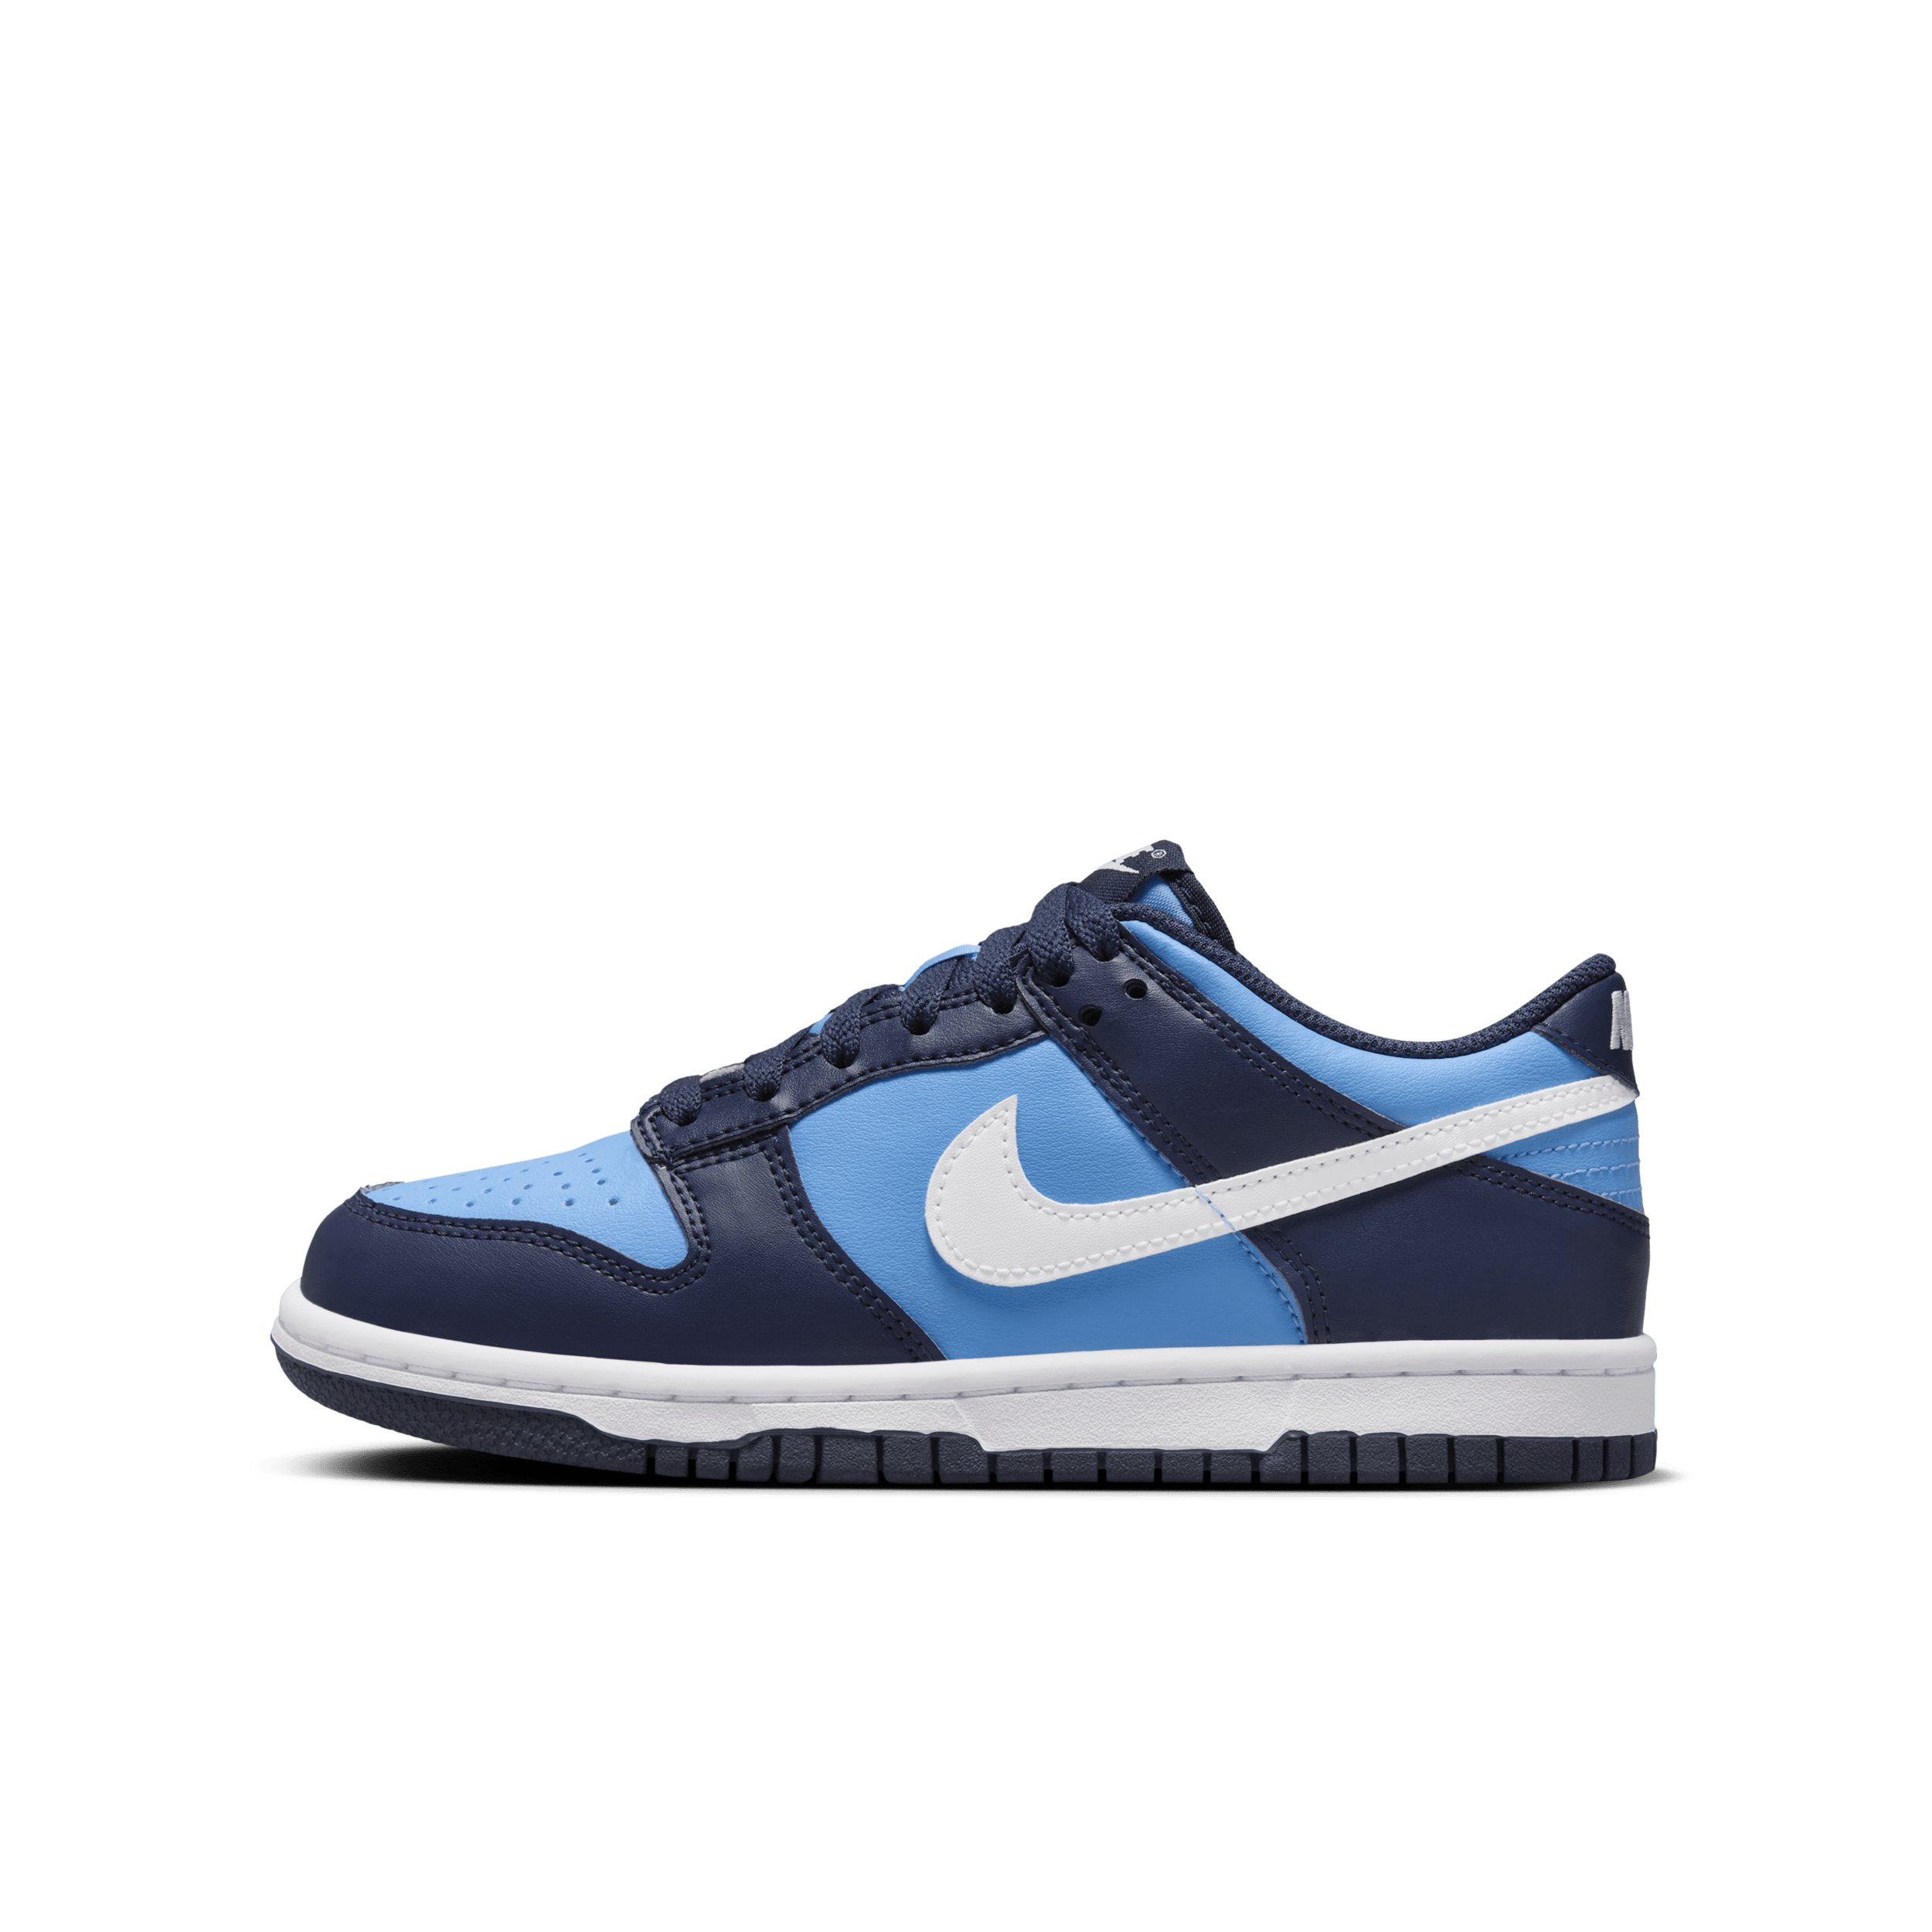 Chaussure Nike Dunk Low pour ado - Bleu